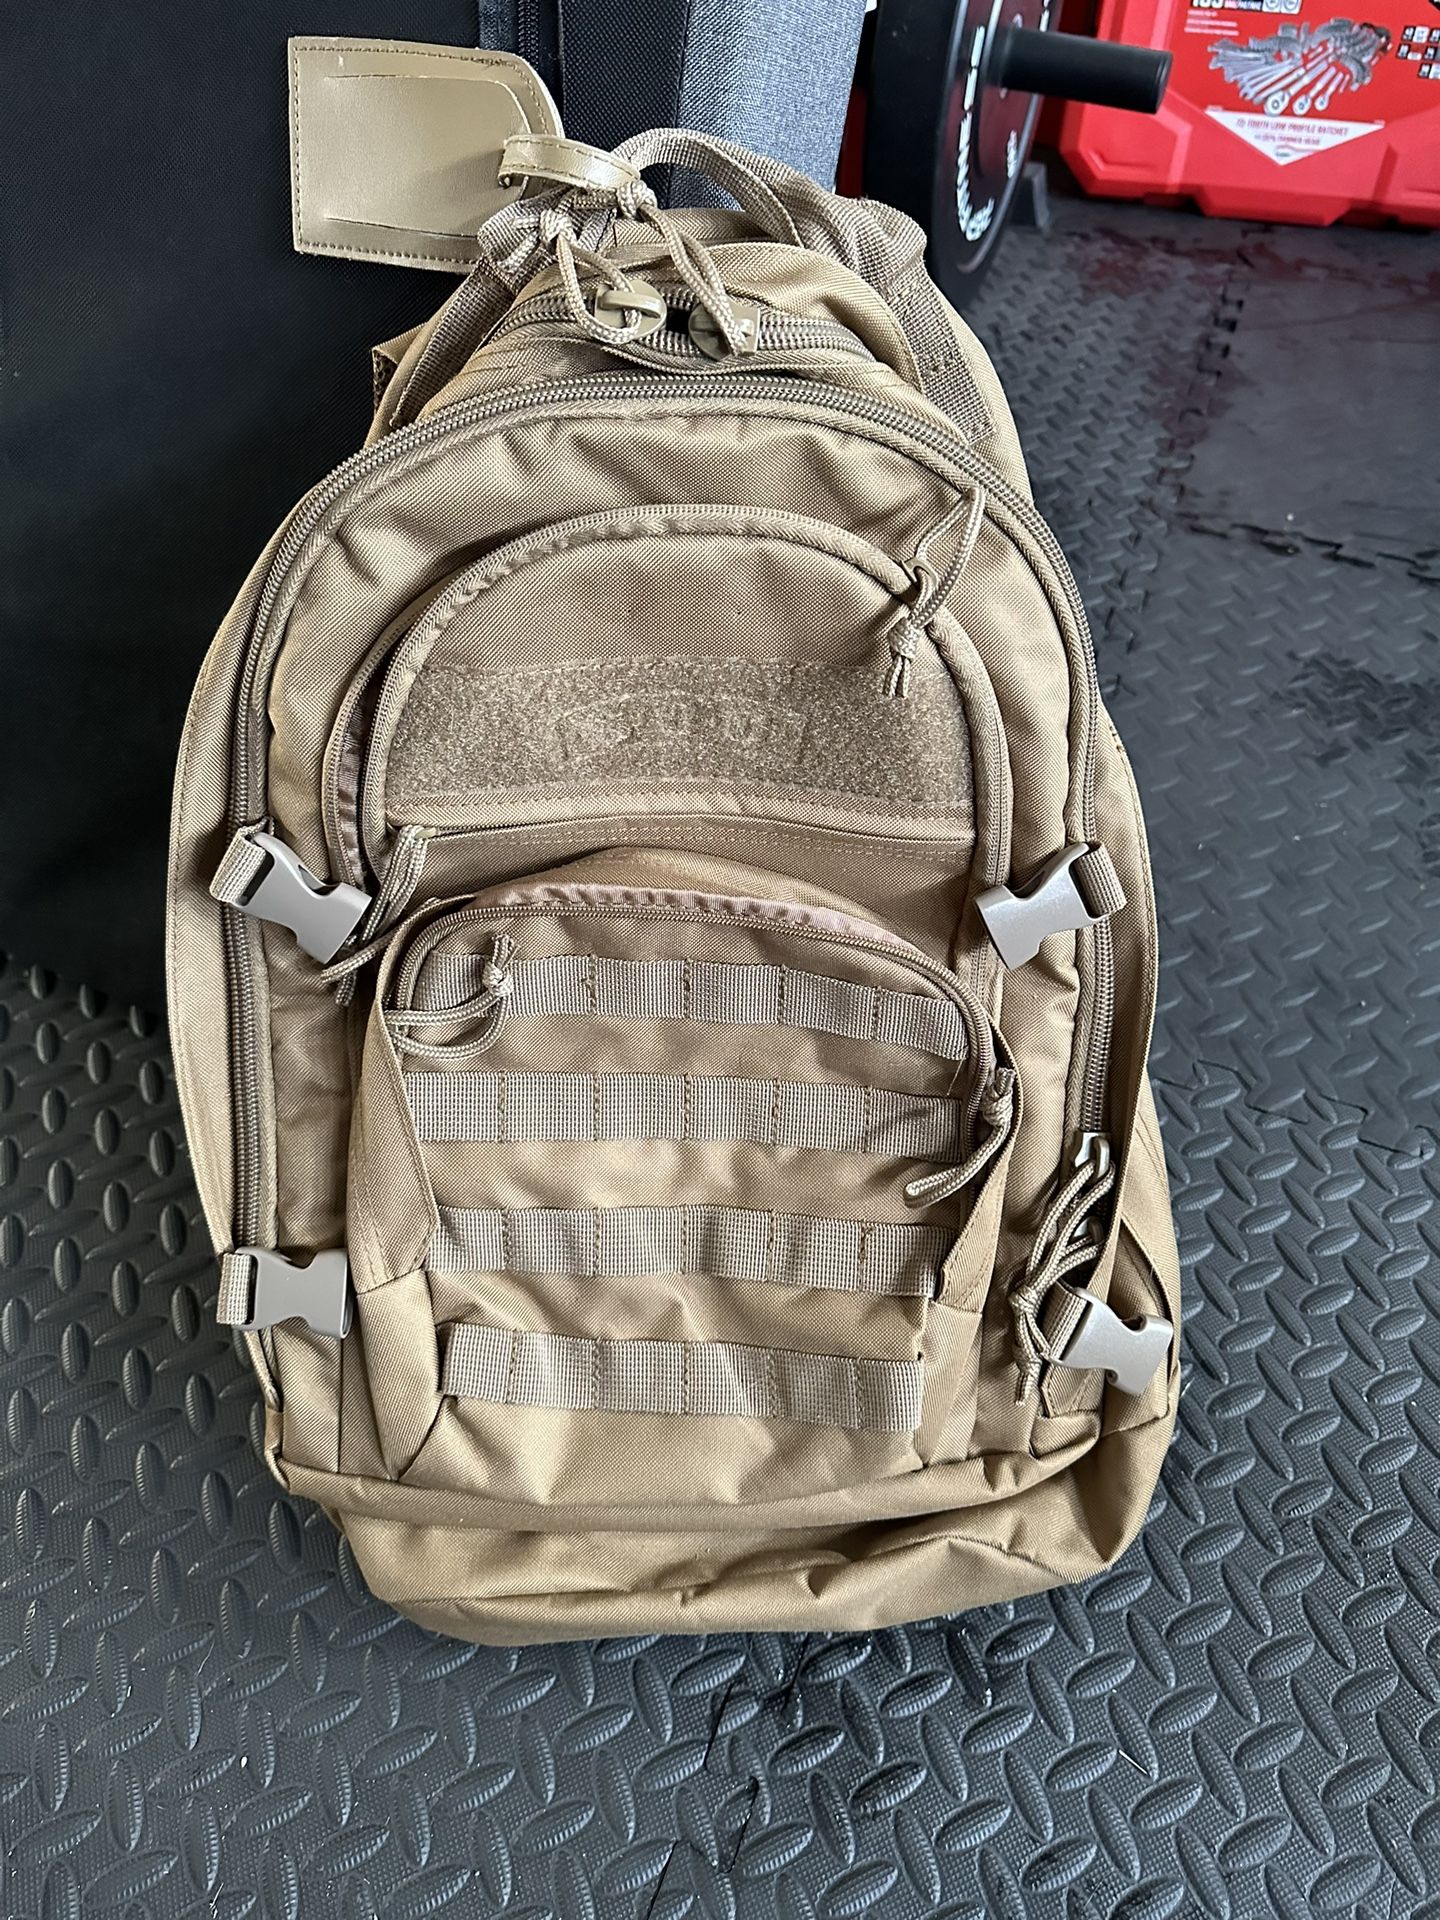 Black And Khaki Military Backpacks